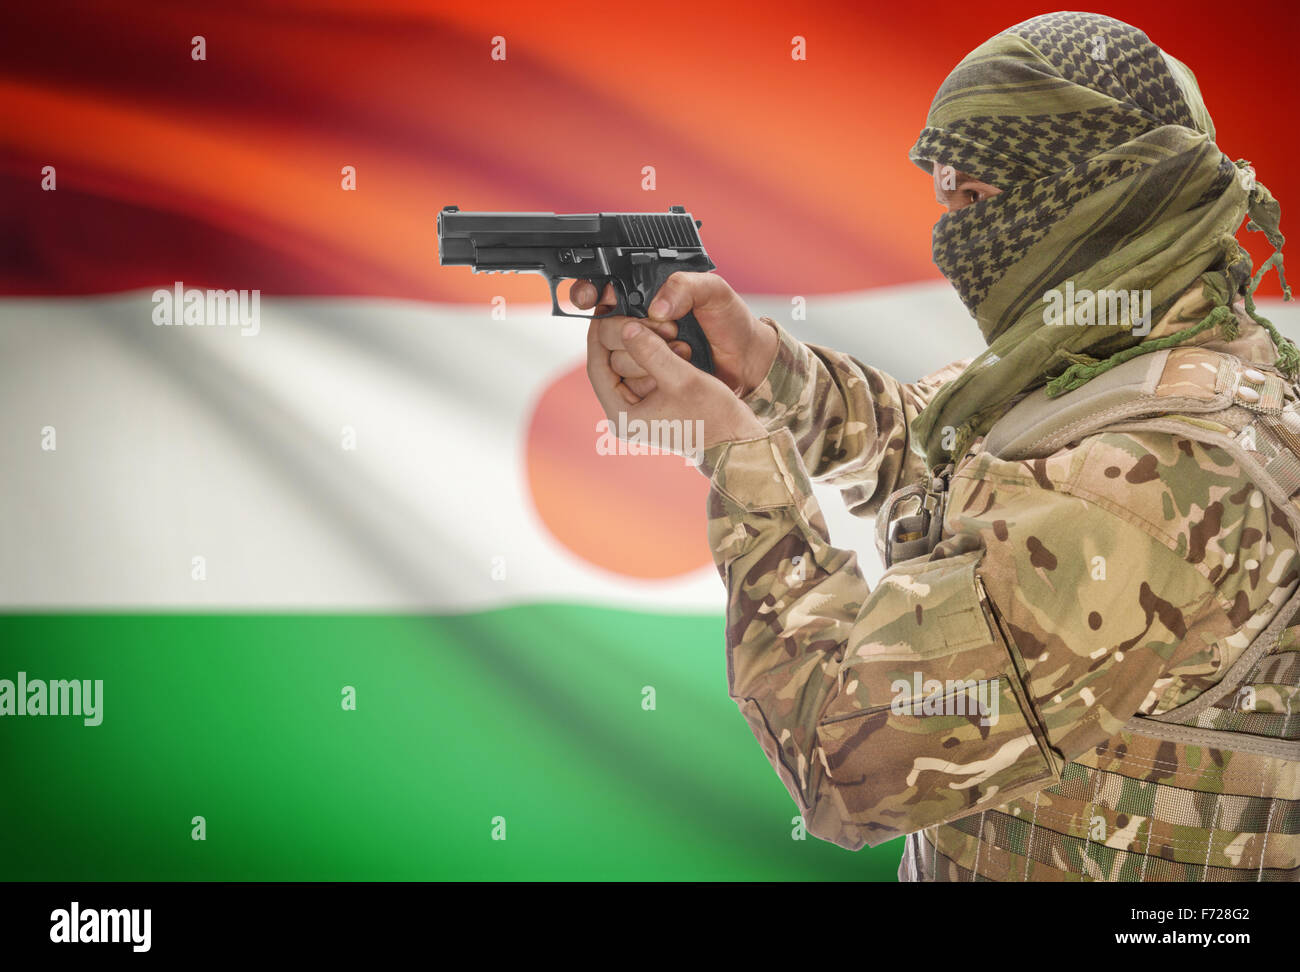 Mâle en keffieh musulmane avec fusil à la main et drapeau national sur fond de série - Niger Banque D'Images